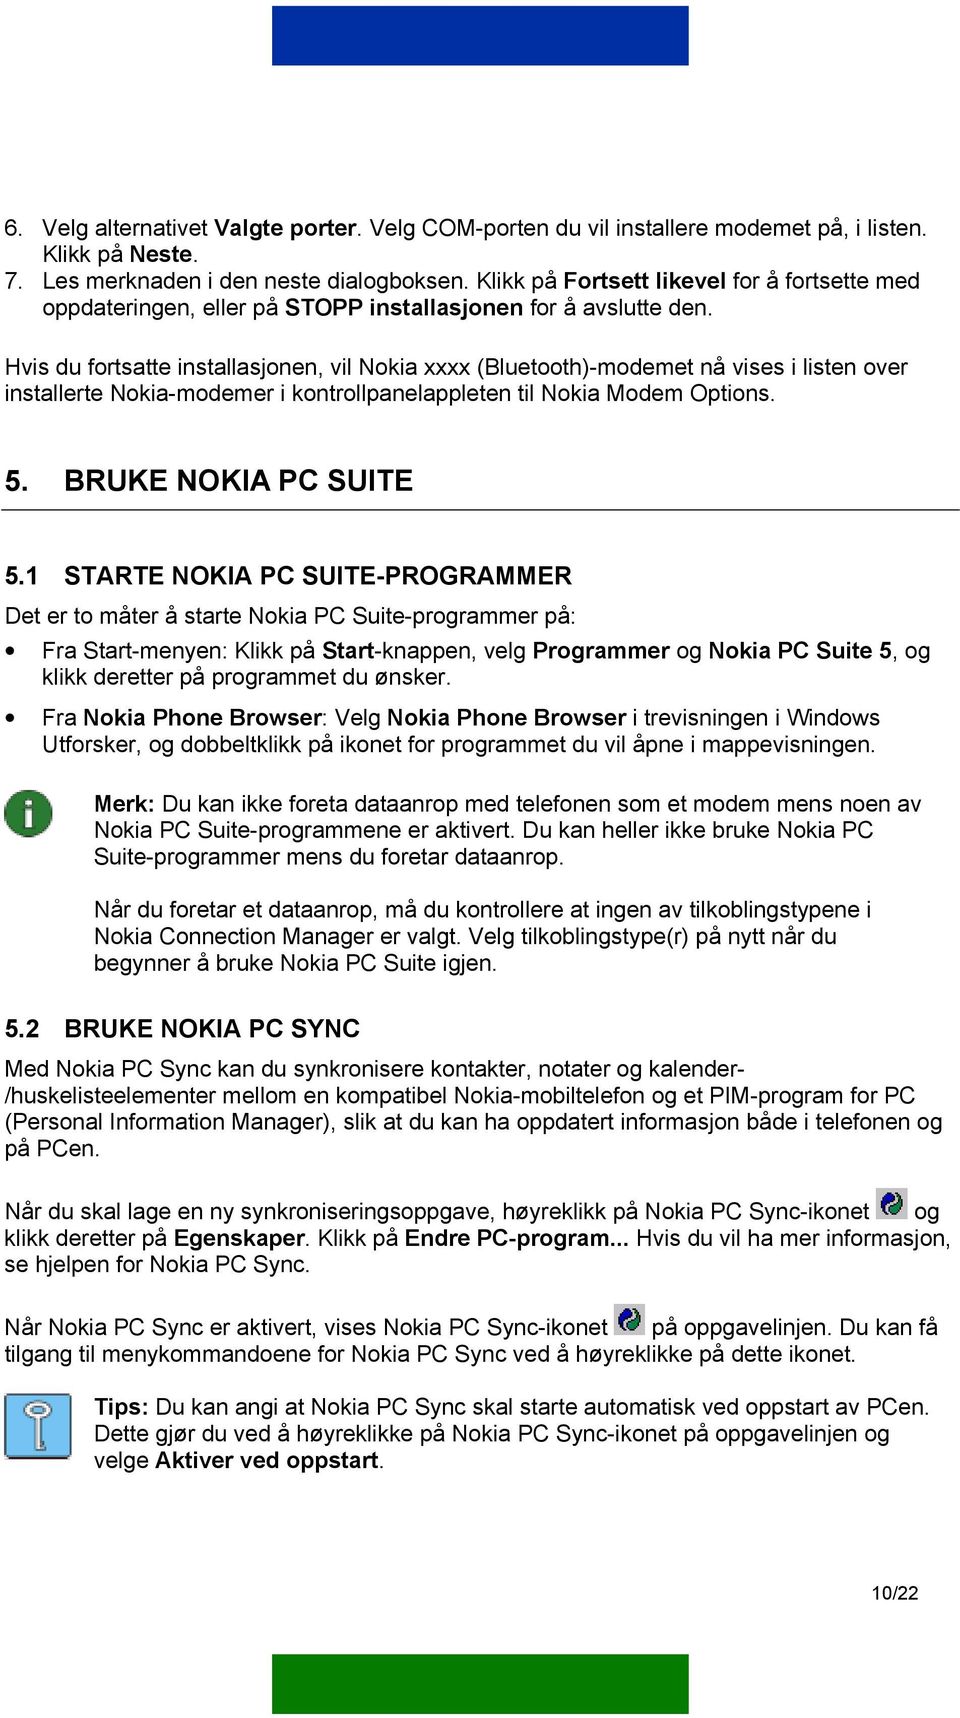 Hvis du fortsatte installasjonen, vil Nokia xxxx (Bluetooth)-modemet nå vises i listen over installerte Nokia-modemer i kontrollpanelappleten til Nokia Modem Options. 5. BRUKE NOKIA PC SUITE 5.